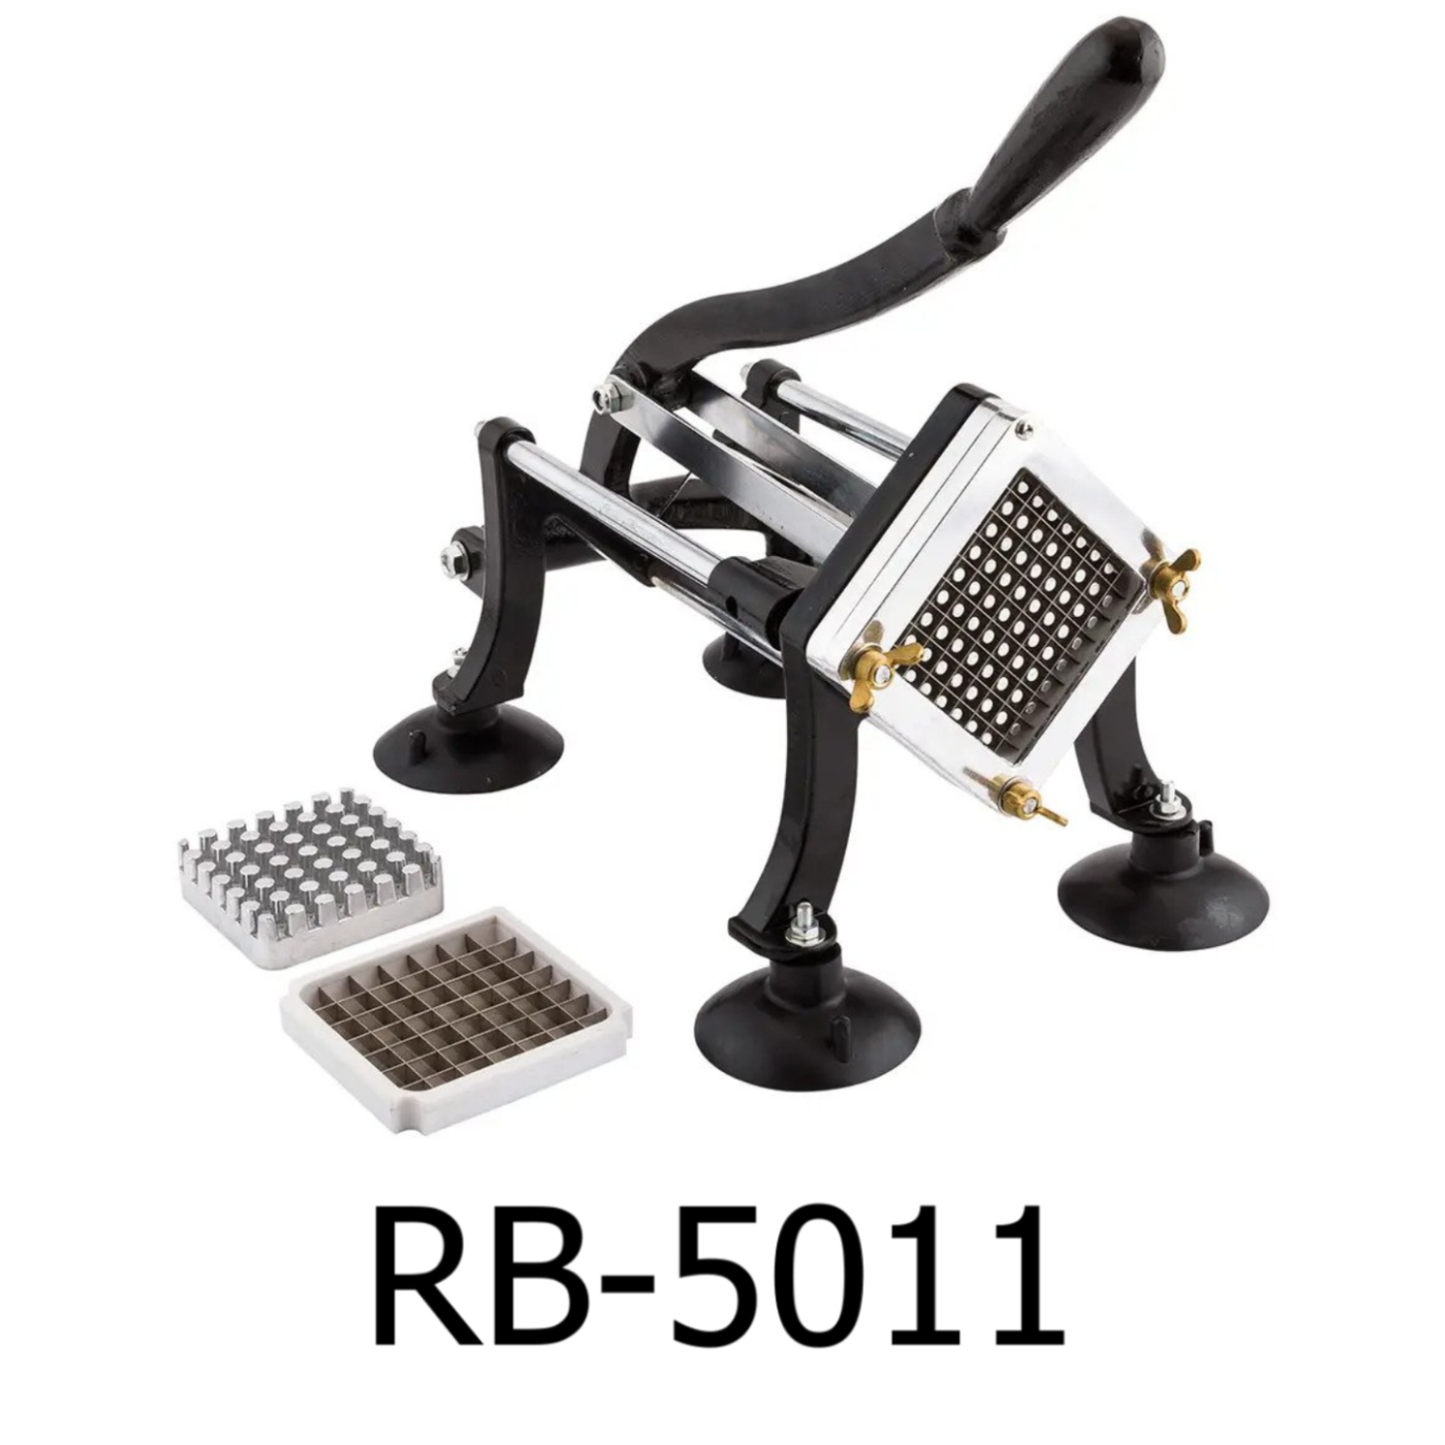 https://www.randbimport.com/cdn/shop/products/RB-5011.png?v=1675985083&width=1445